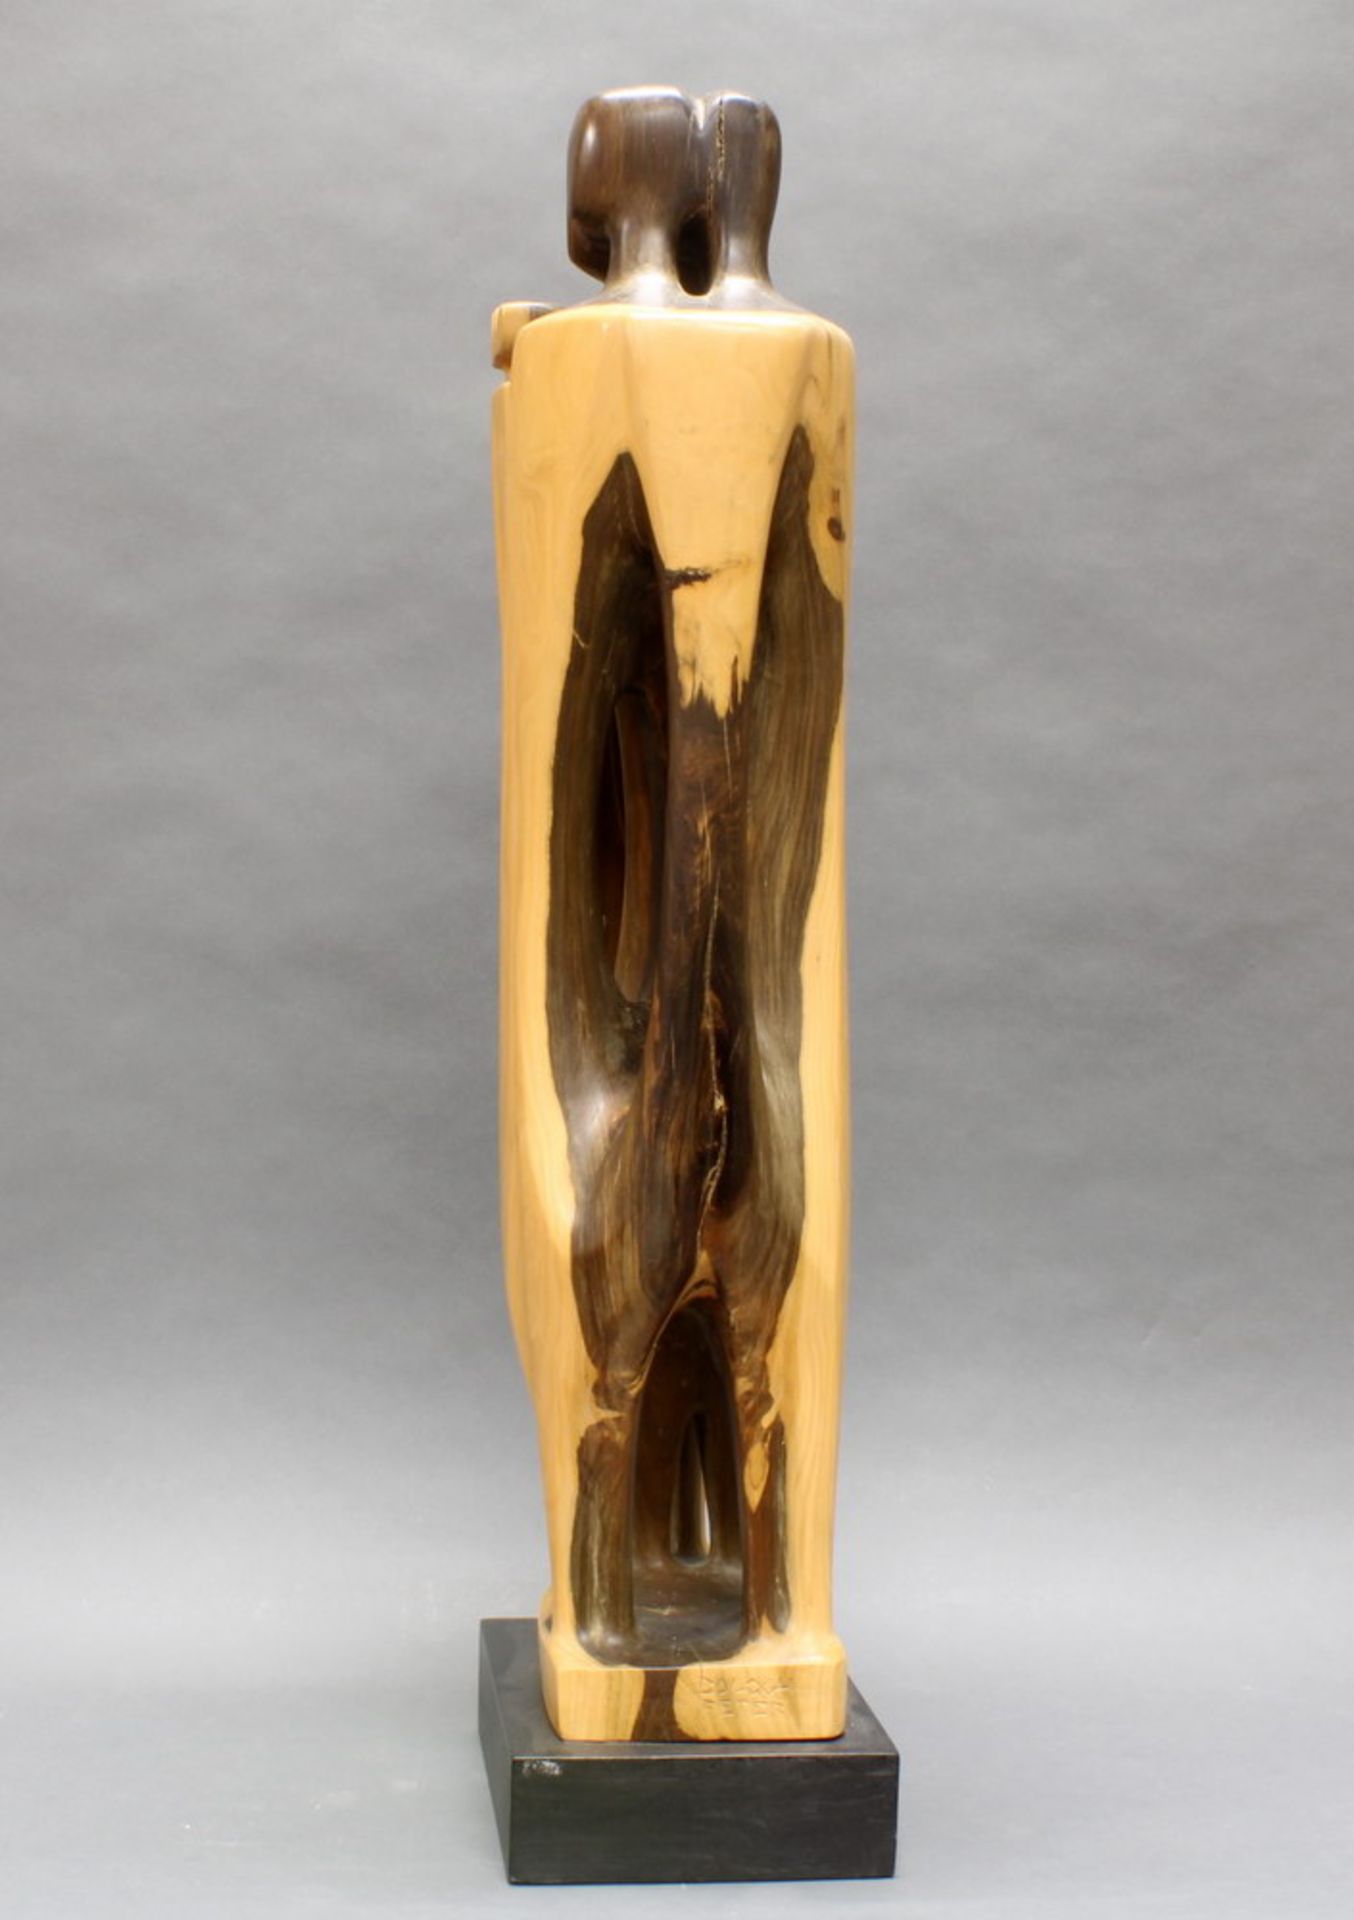 Skulptur, Holz geschnitzt, "Abstrakt", seitlich bezeichnet Peter Balogh, auf Holzsockel, 94 cm - Bild 2 aus 5